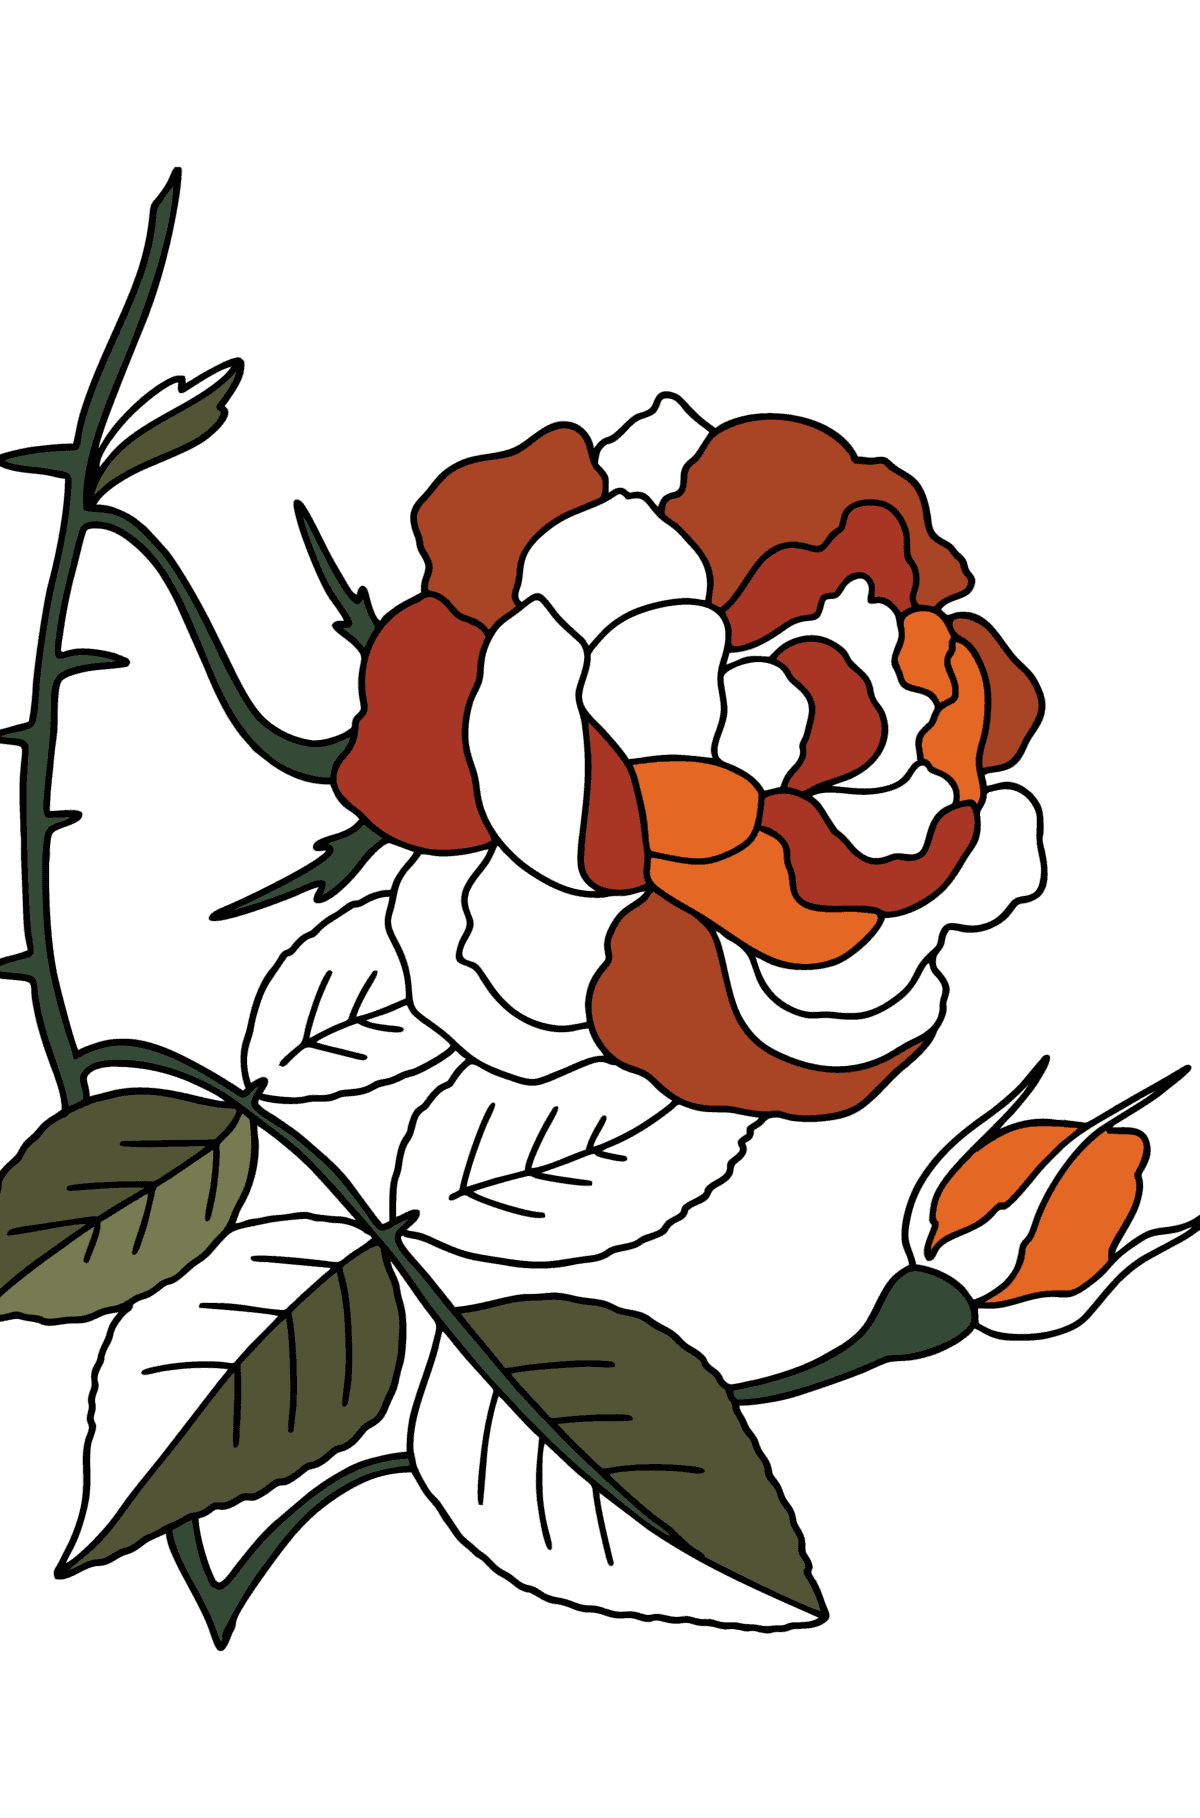 Disegno di Rosa rampicante rossa da colorare - Disegni da colorare per bambini